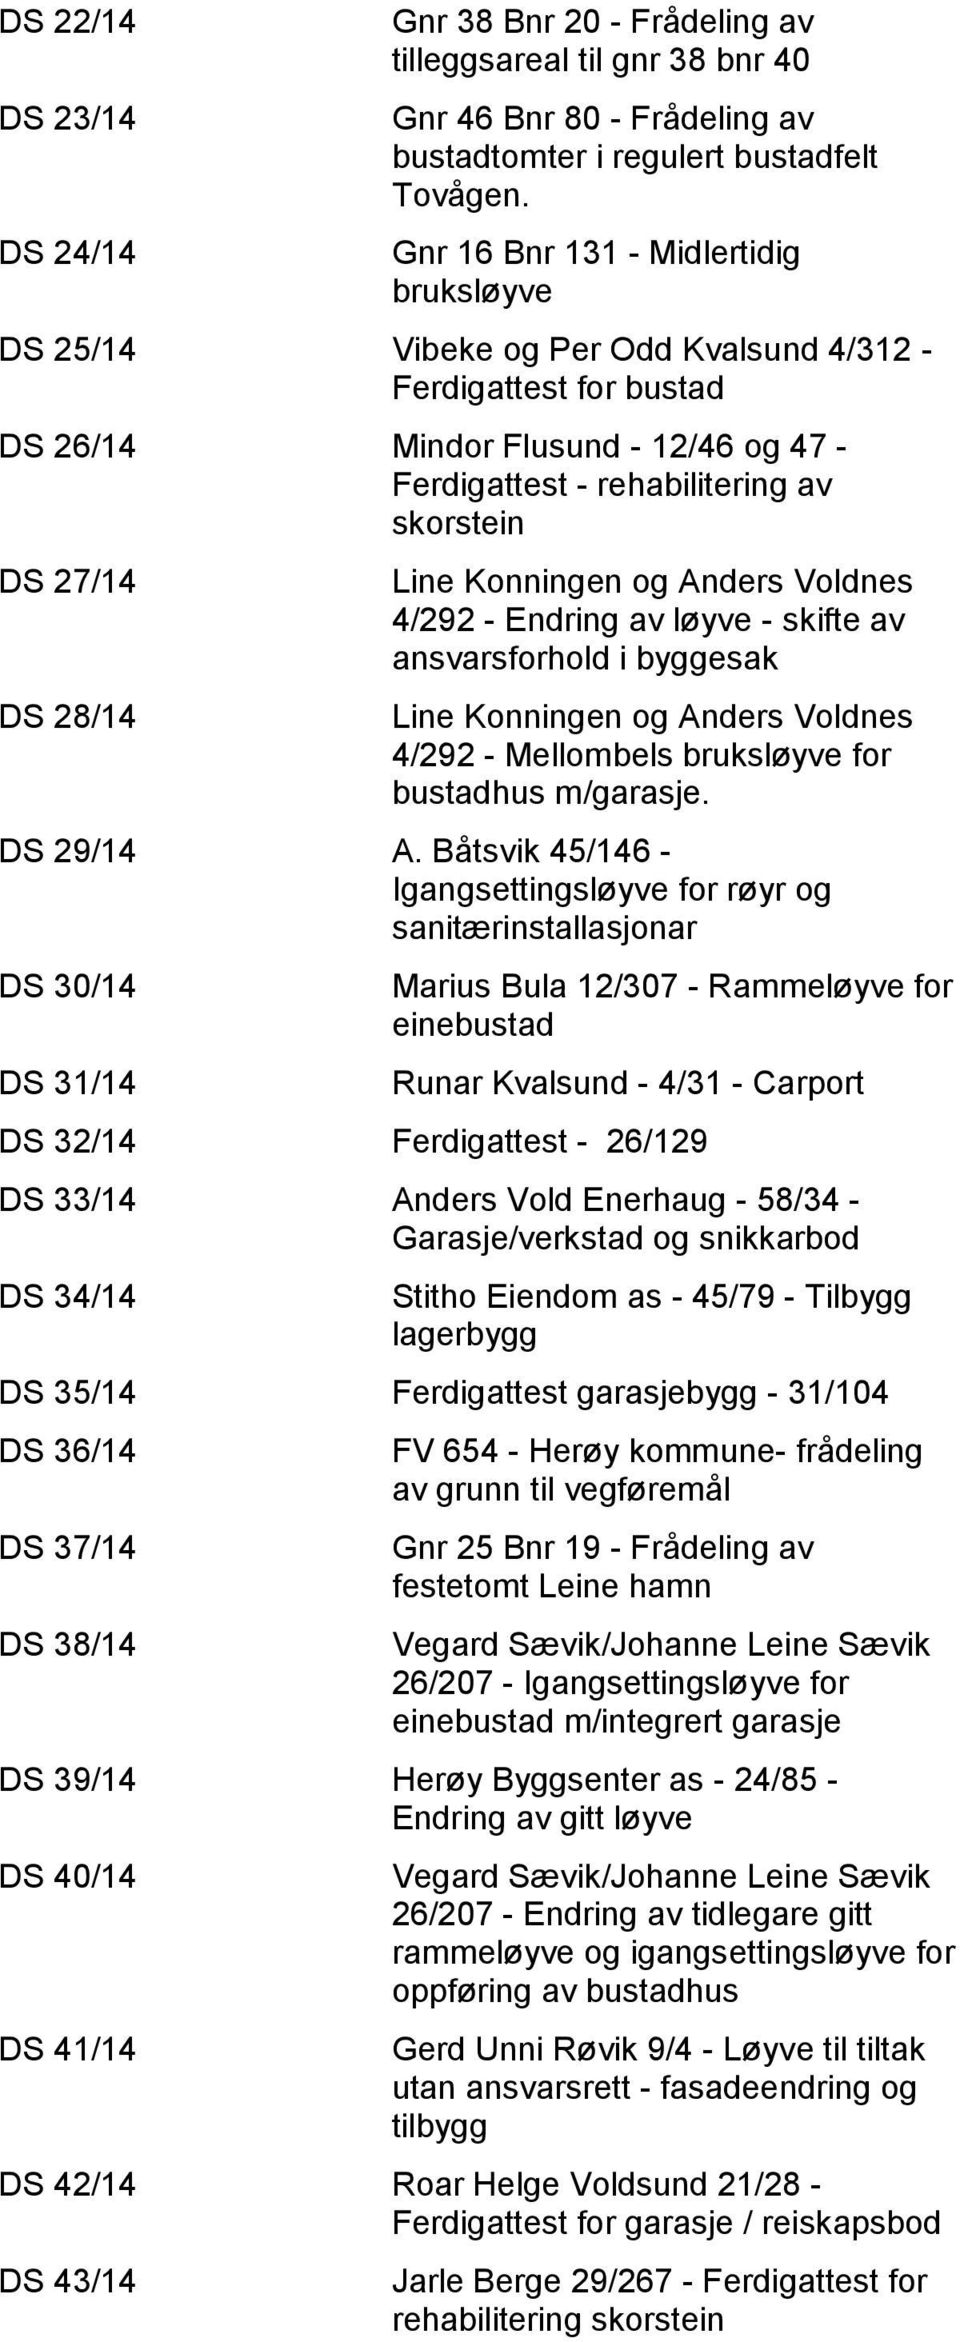 DS 28/14 Line Konningen og Anders Voldnes 4/292 - Endring av løyve - skifte av ansvarsforhold i byggesak Line Konningen og Anders Voldnes 4/292 - Mellombels bruksløyve for bustadhus m/garasje.